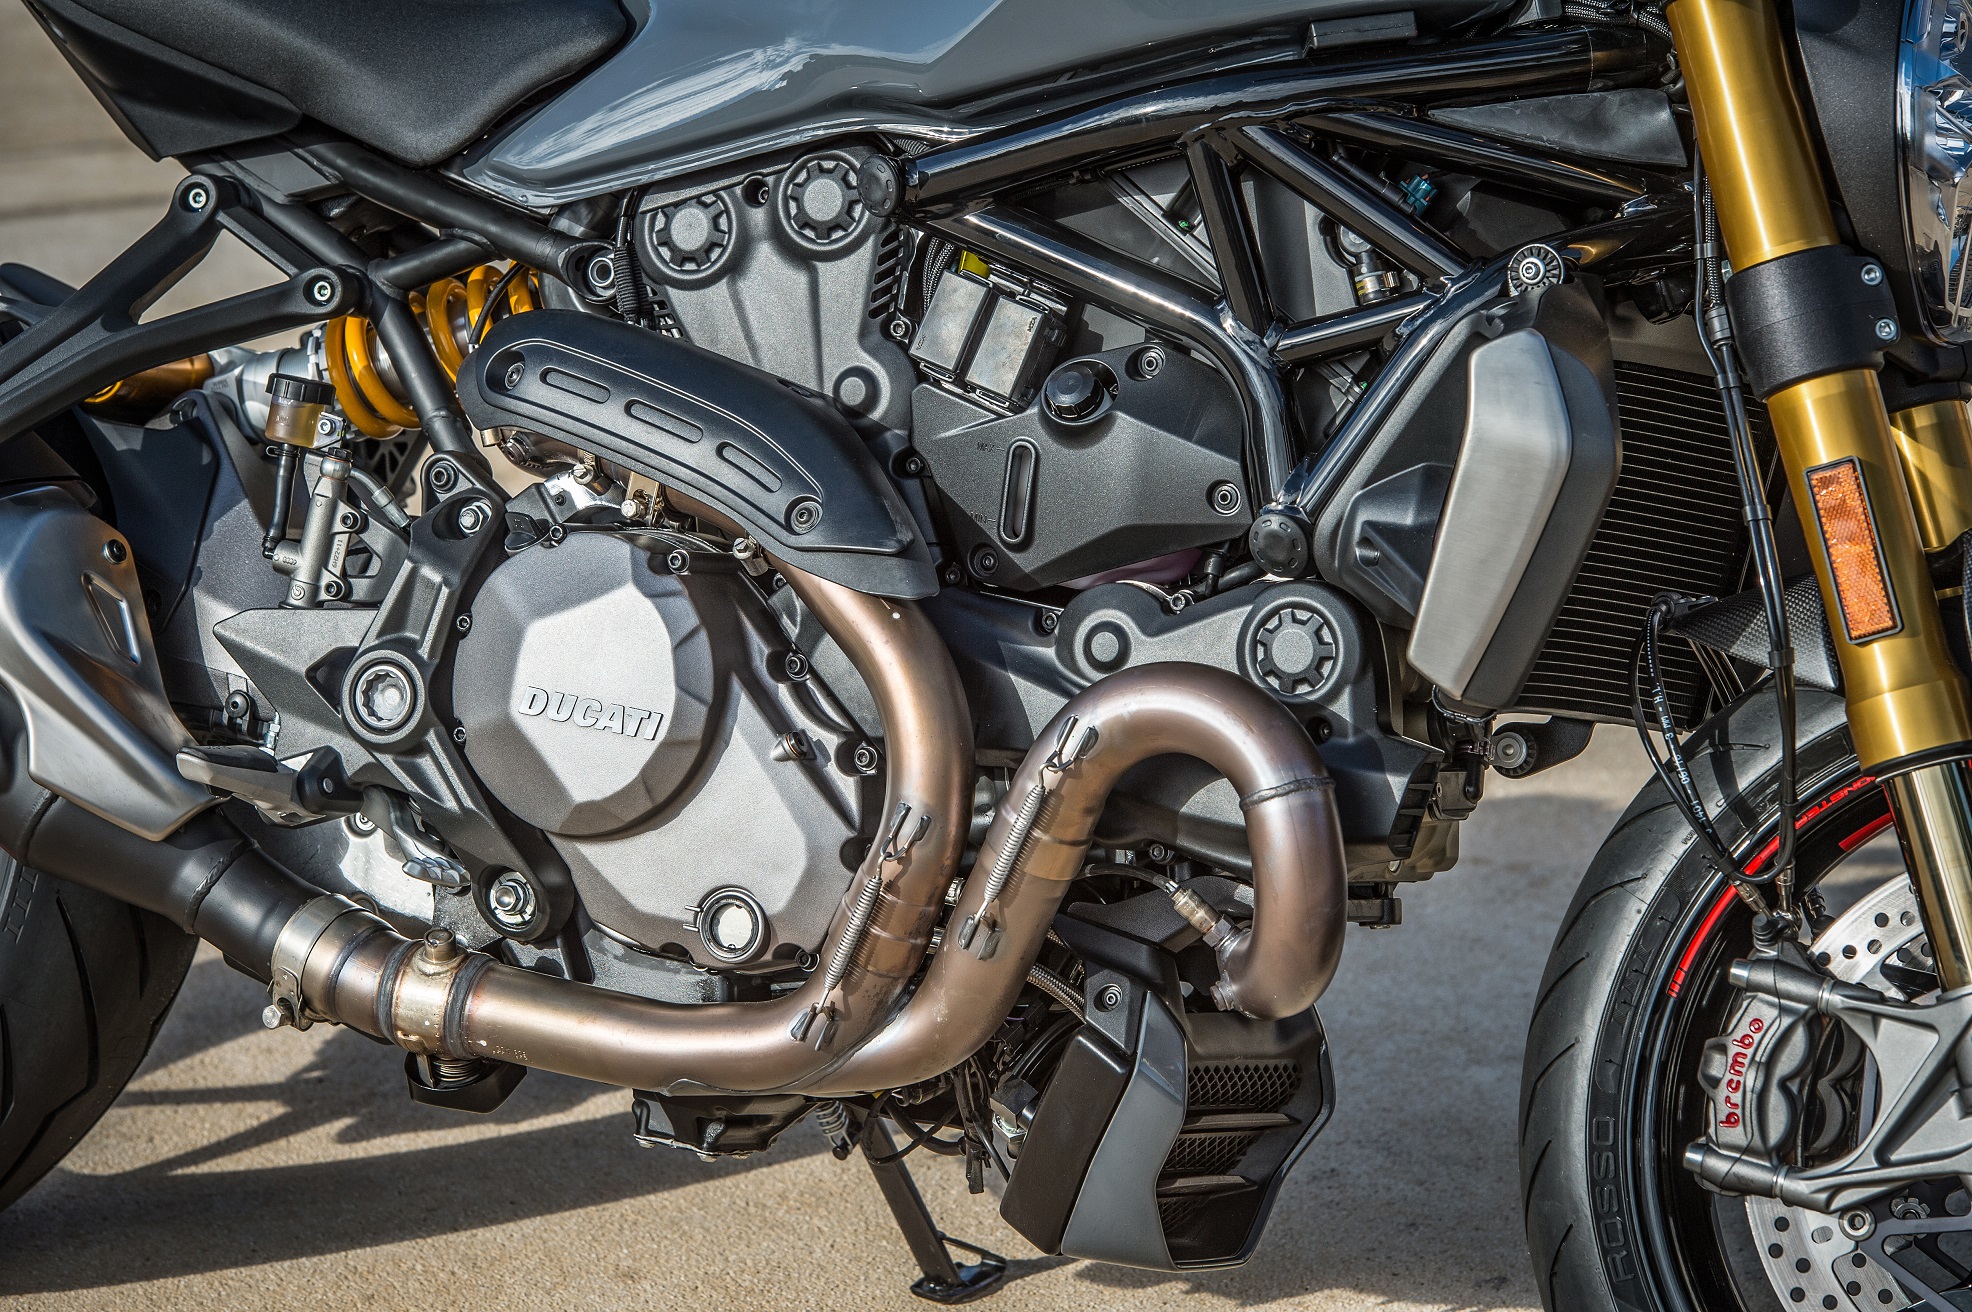 2017 Ducati Monaster 1200 Testastretta engine